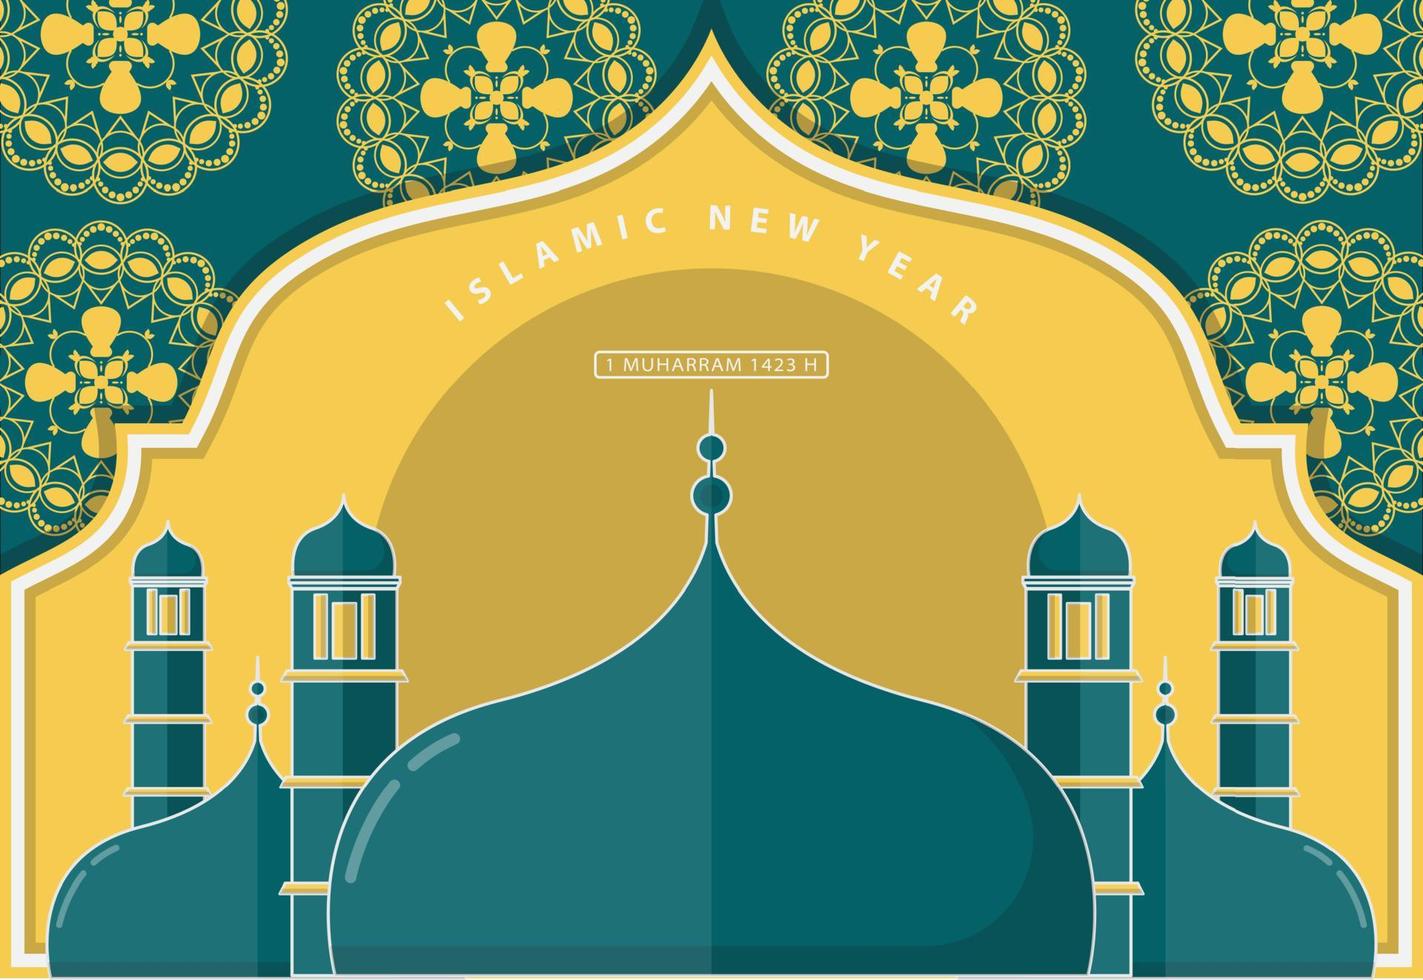 Vektor-Illustration islamischer Hintergrund des neuen Jahres vektor